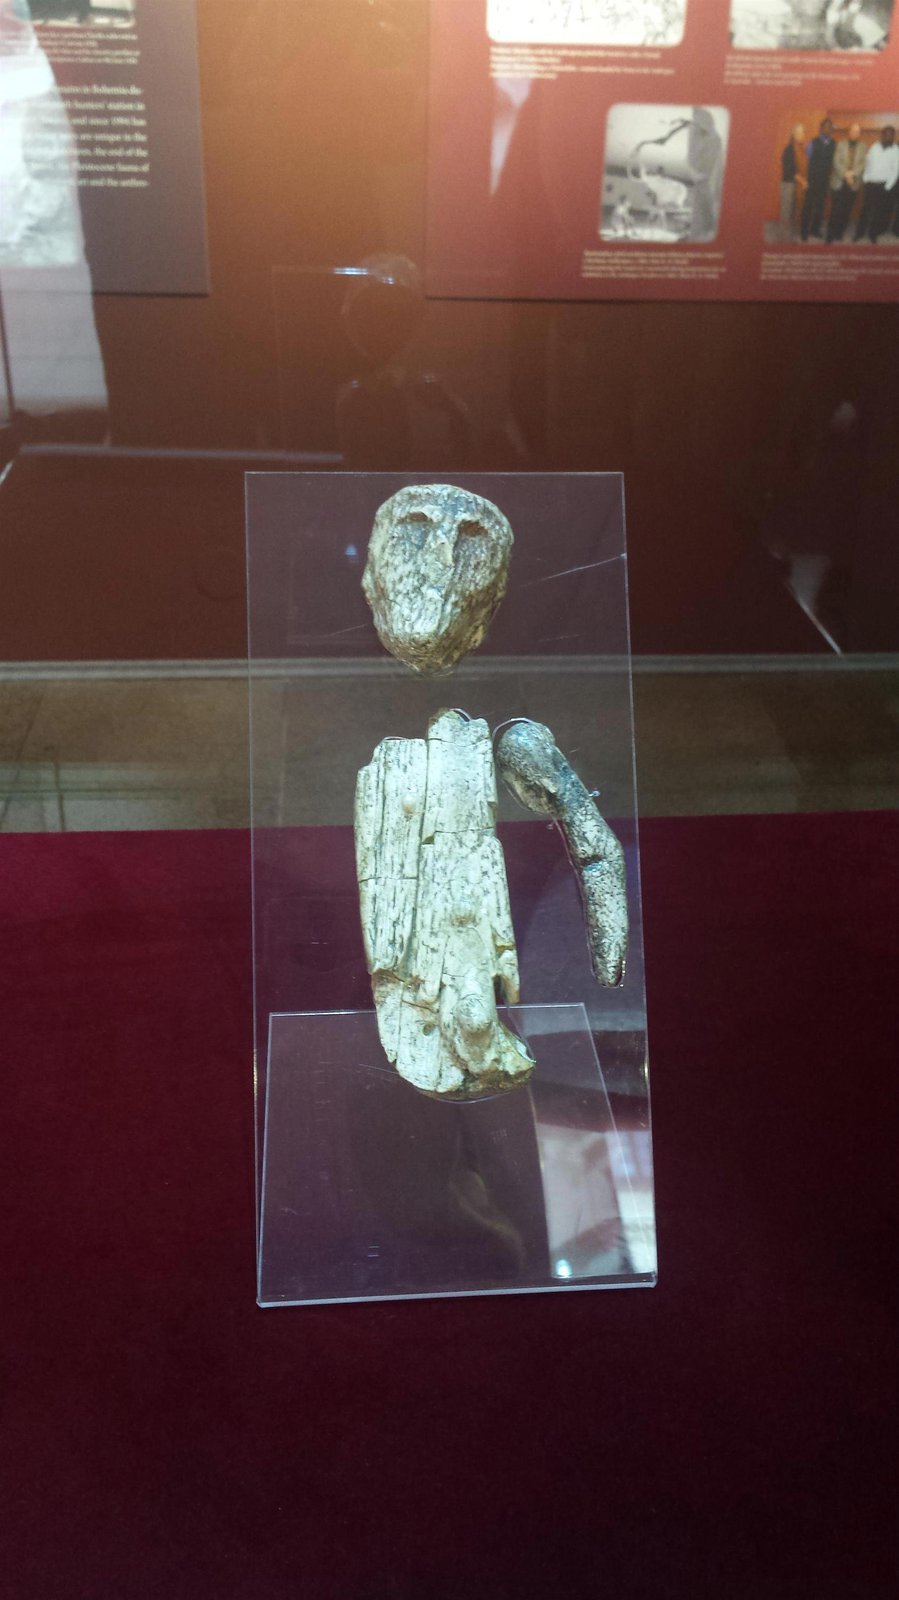 Mužská plastika (Soška šamana) je stará asi 27 000 let, byla objevena v roce 1891 na křižovatce Přadlácké a Francouzské v brněnském Cejlu jako součást hrobu.